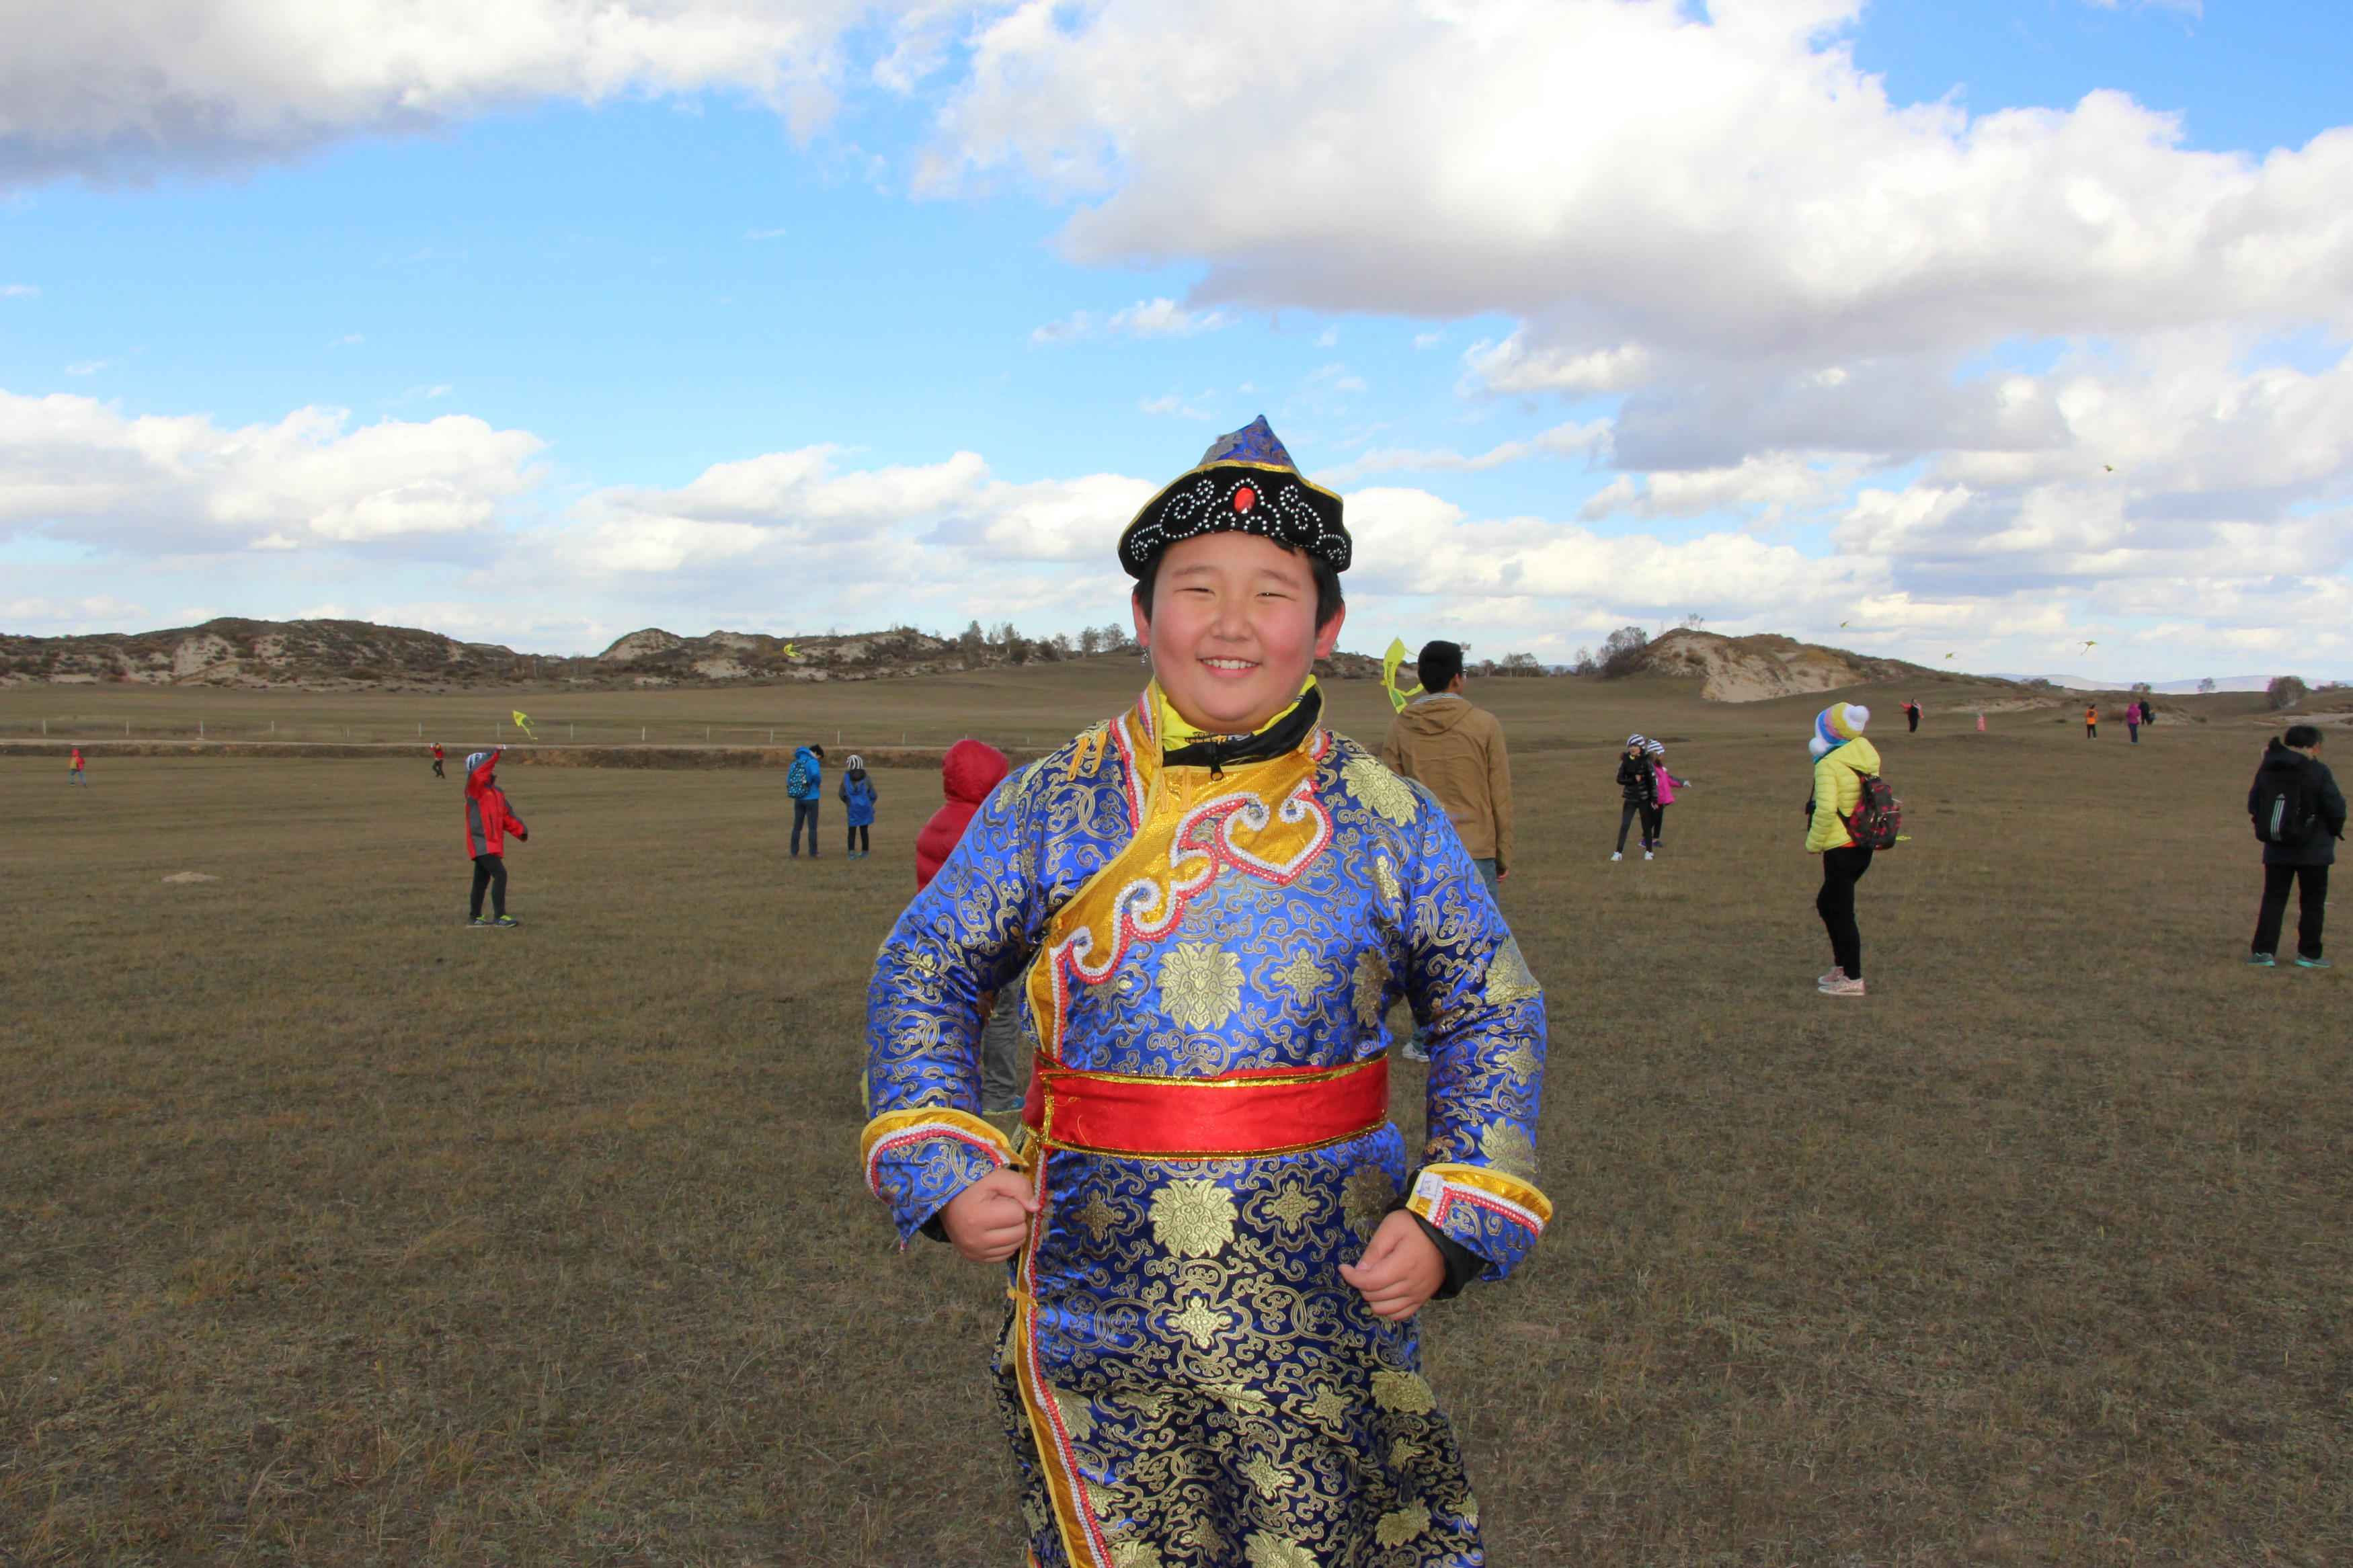 换上蒙古服装,立马变成了蒙古族小朋友